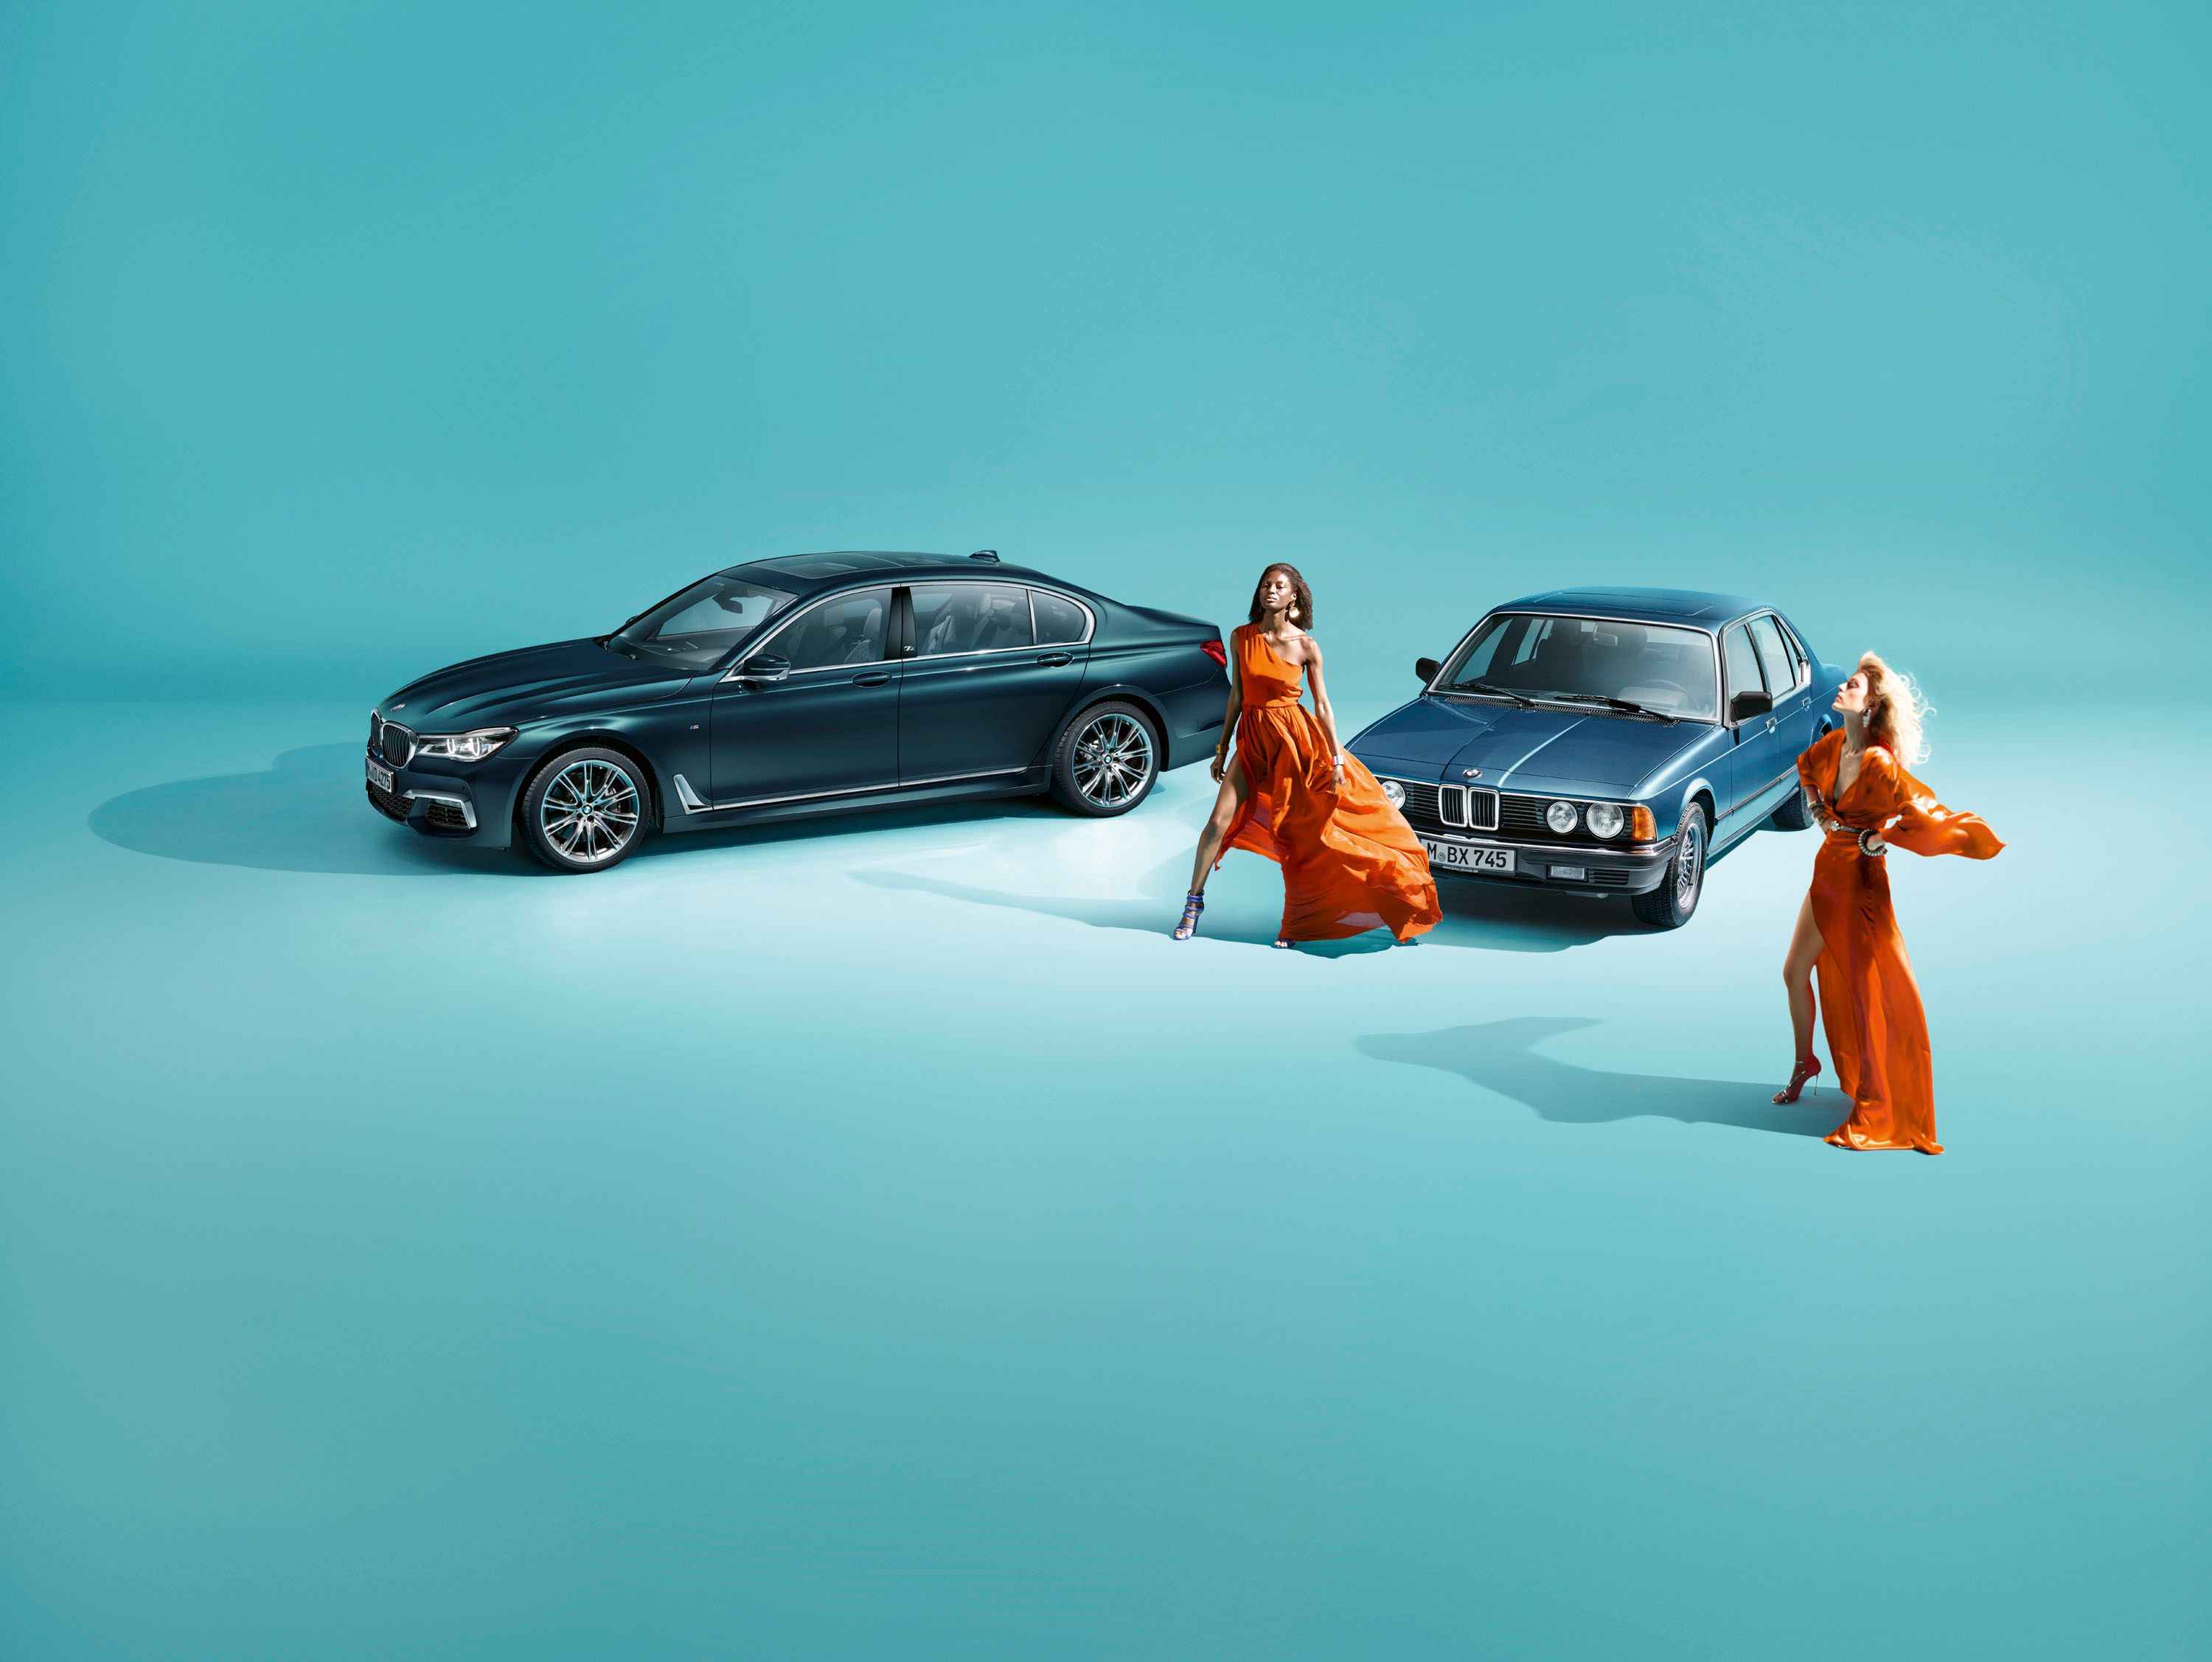 2017 BMW 7 Series Edition 40 Jahre